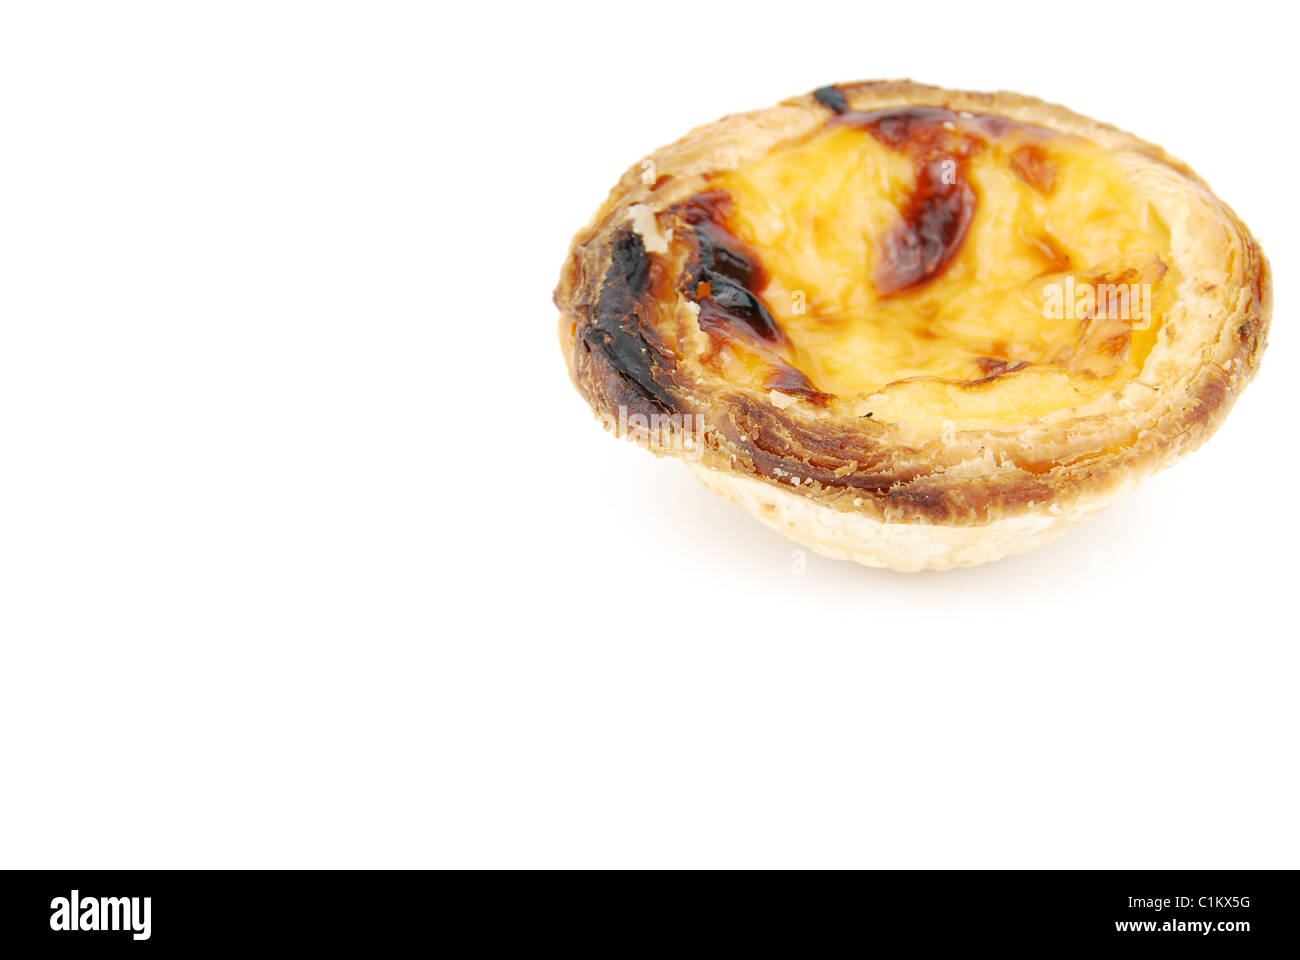 Portugese pastries called pasteis de nata Stock Photo